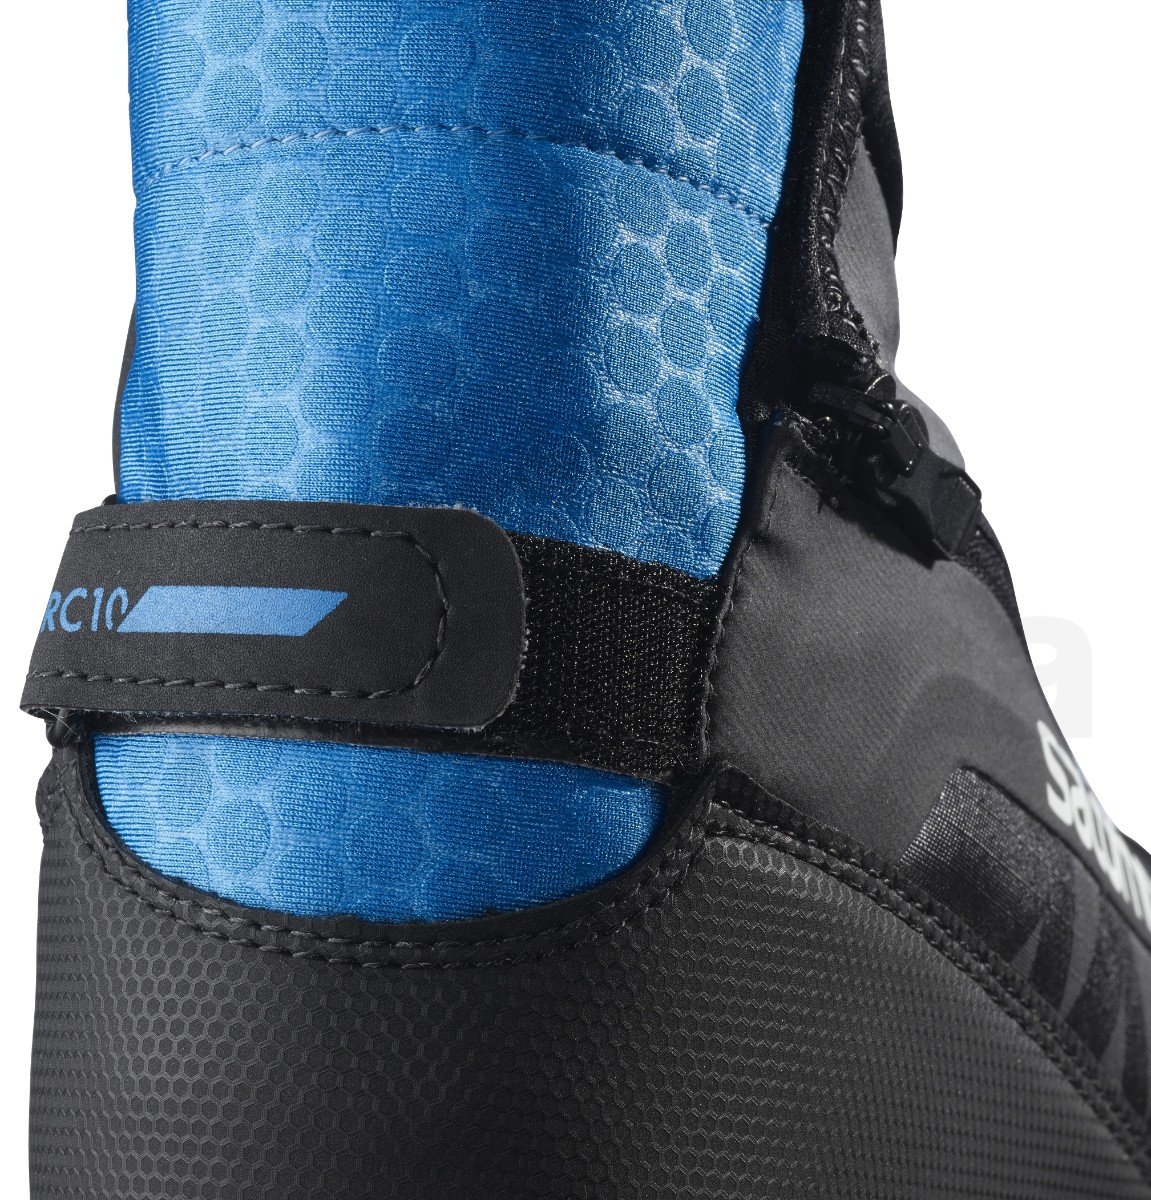 Boty na běžky Salomon RC10 Prolink - černá/modrá